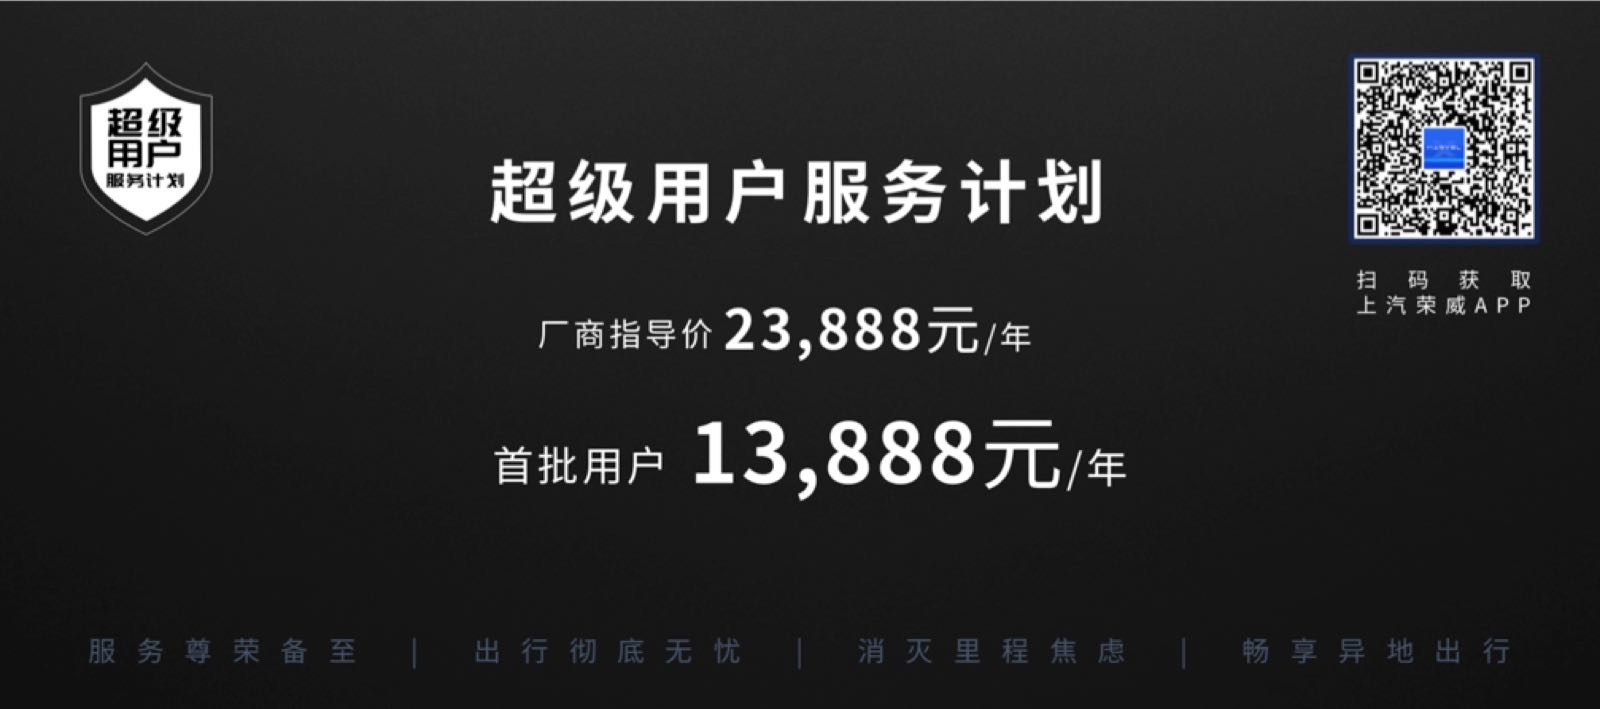 13888元/年 荣威公布超级用户服务计划价格